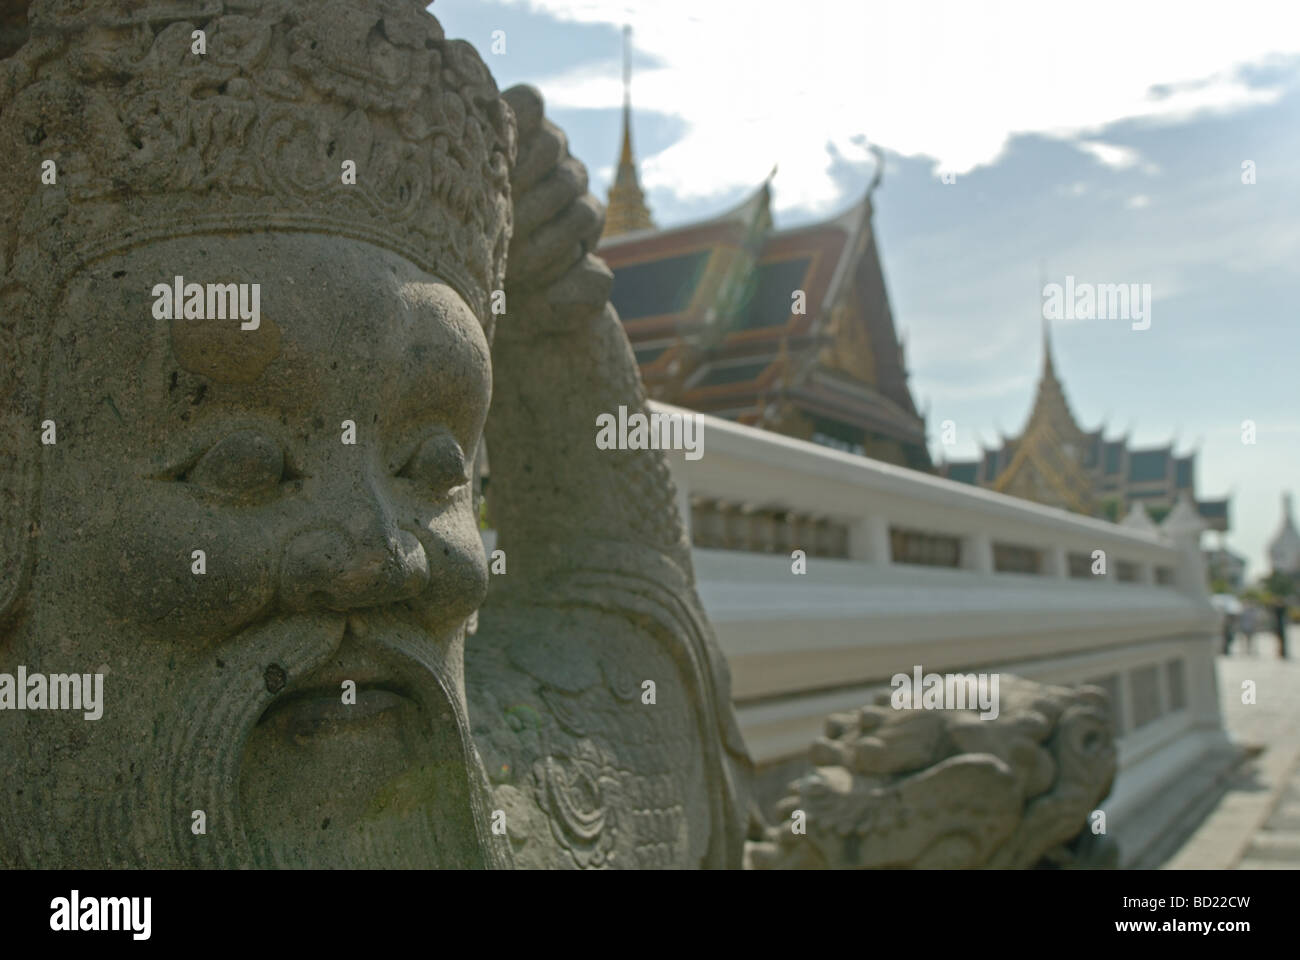 Statue at the Grand Palace in Bangkok, Thailand Stock Photo